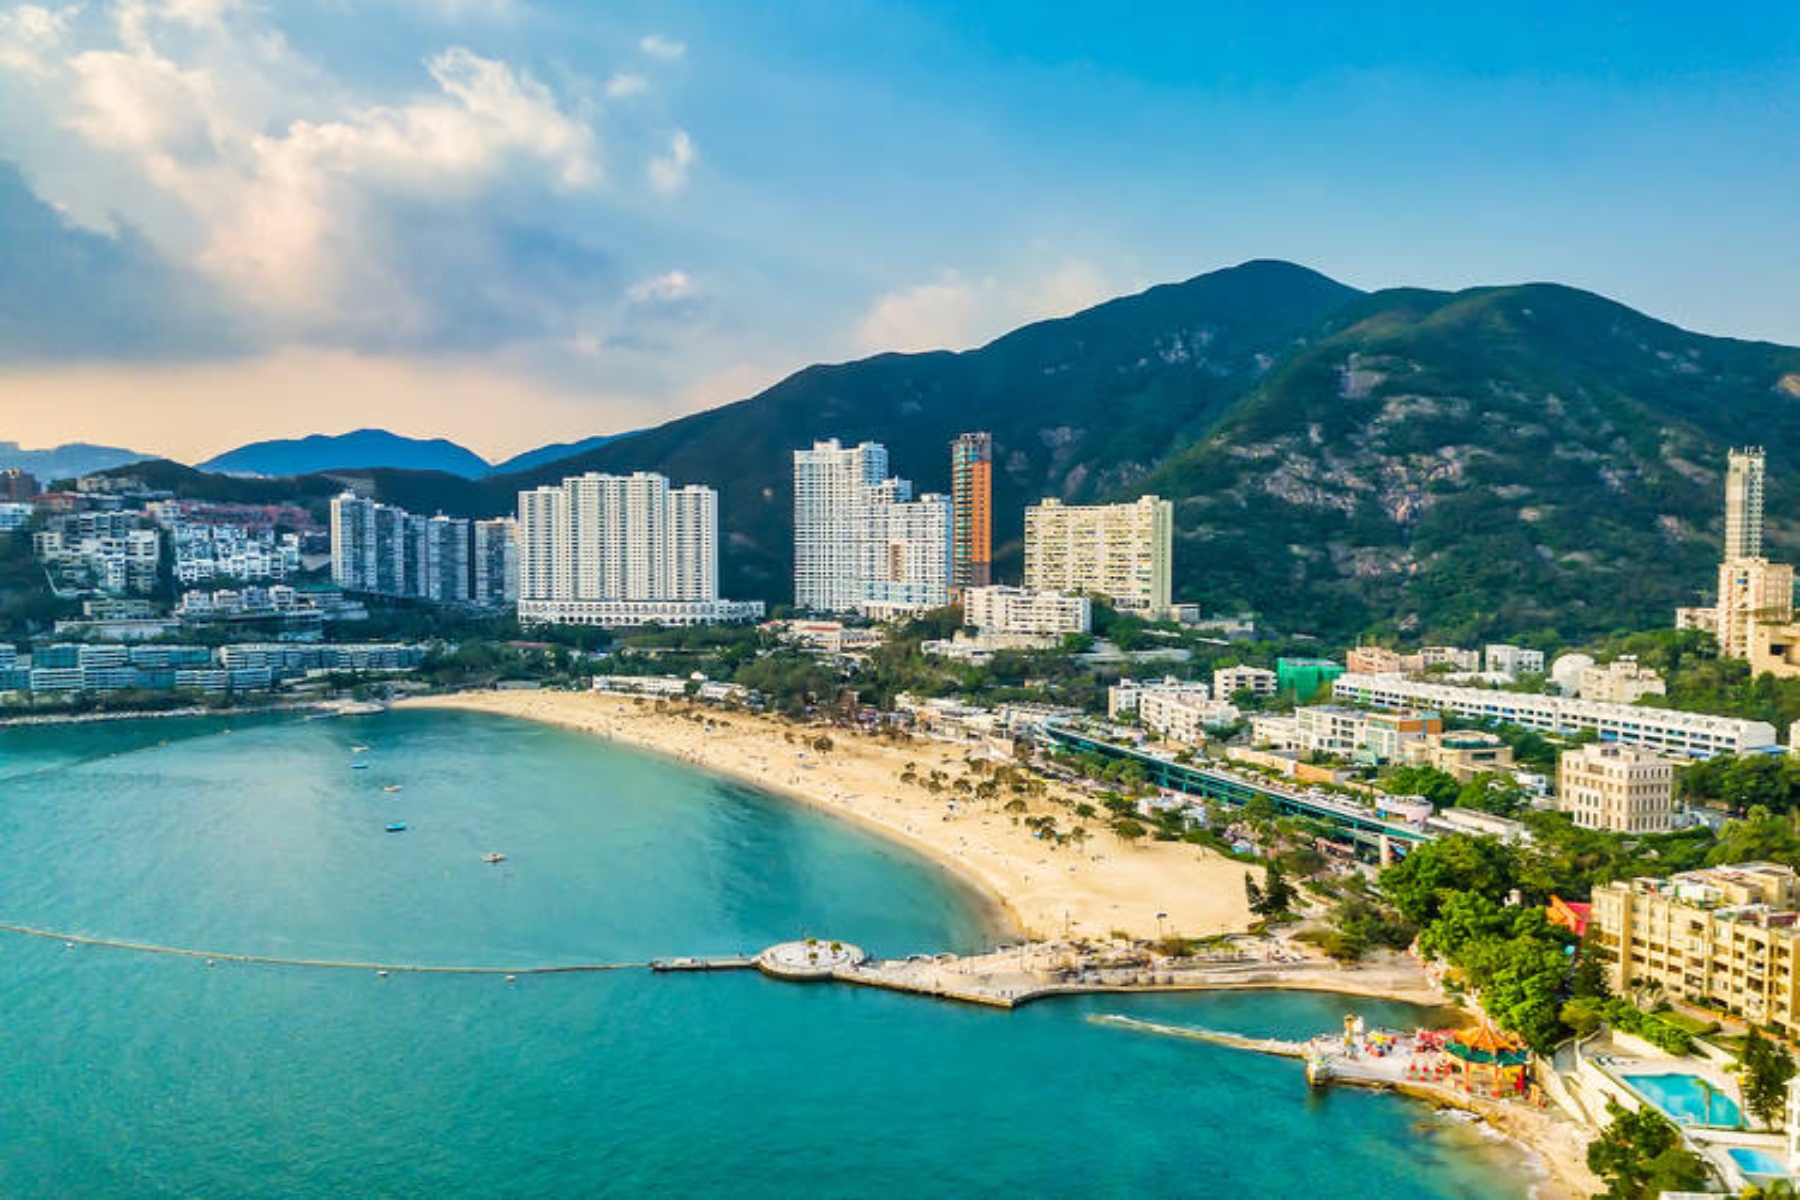 Ασία Covid: Το Χονγκ Κονγκ ανοίγει ξανά τις παραλίες, το Πεκίνο χαλαρώνει την καραντίνα